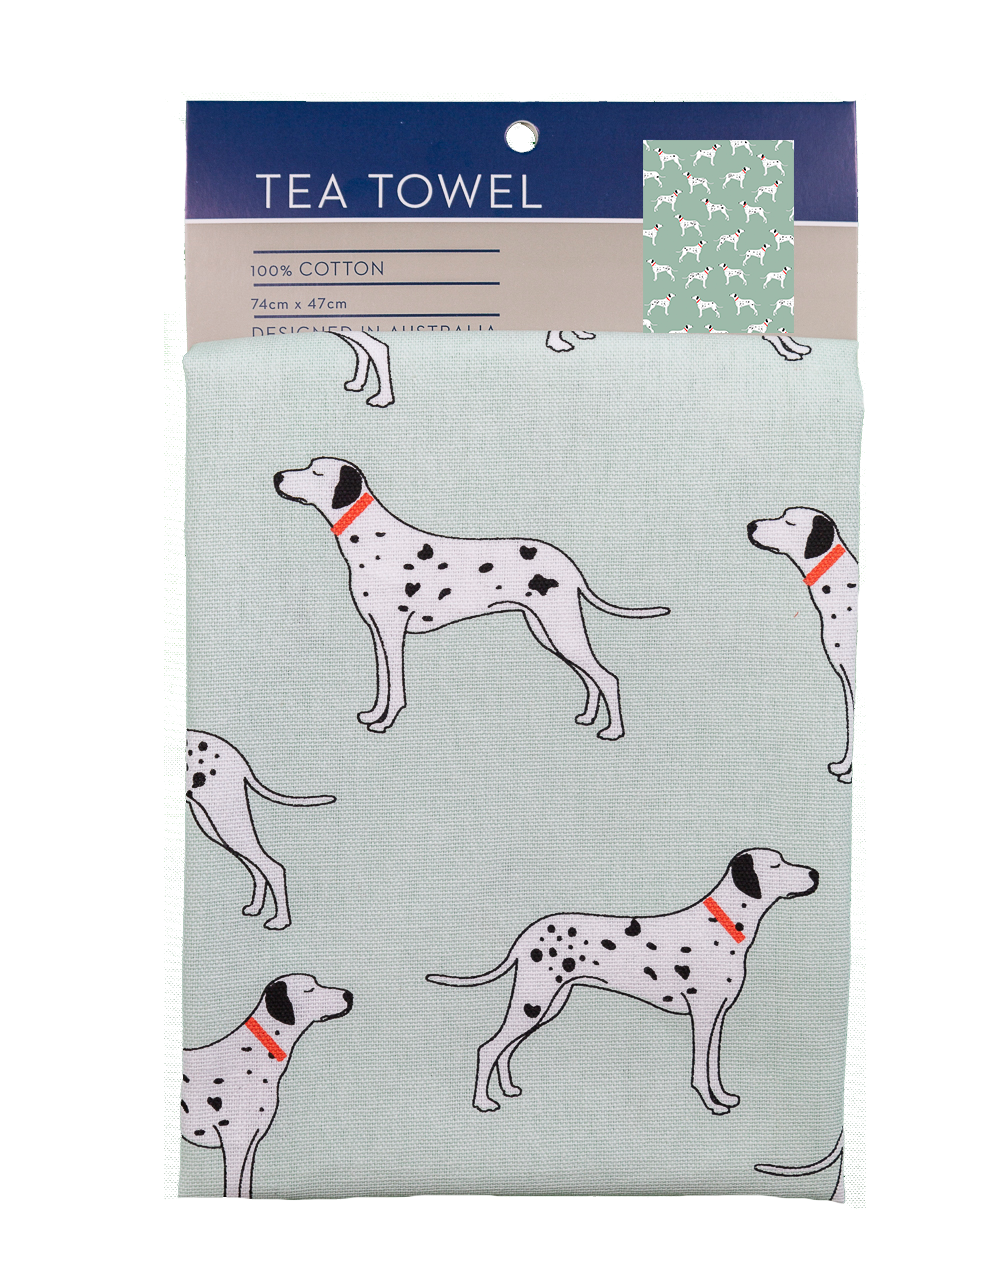 Tea Towel - Dalmatians